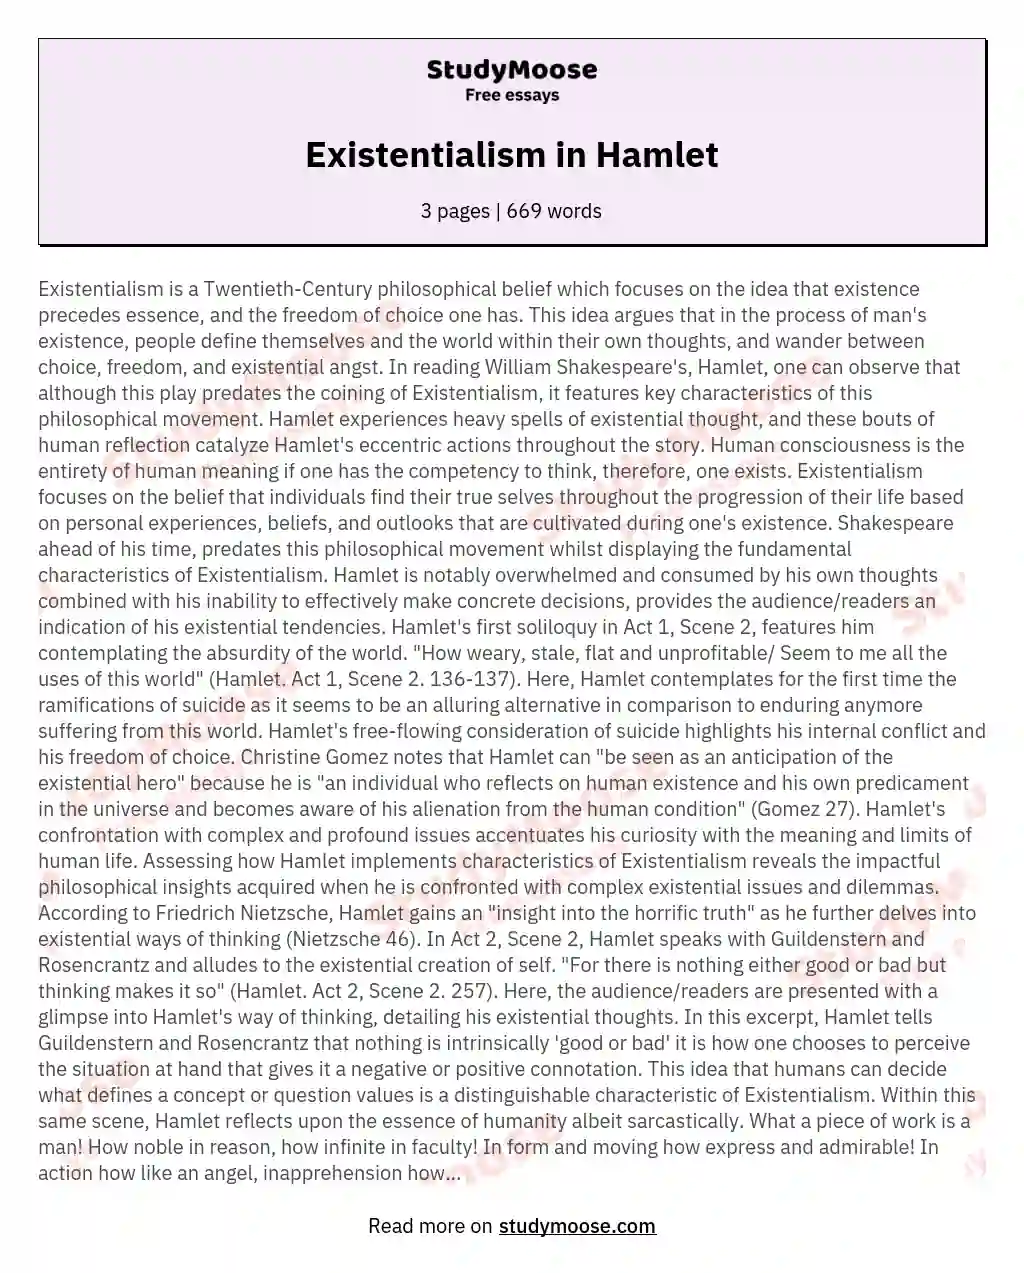 Existentialism in Hamlet essay